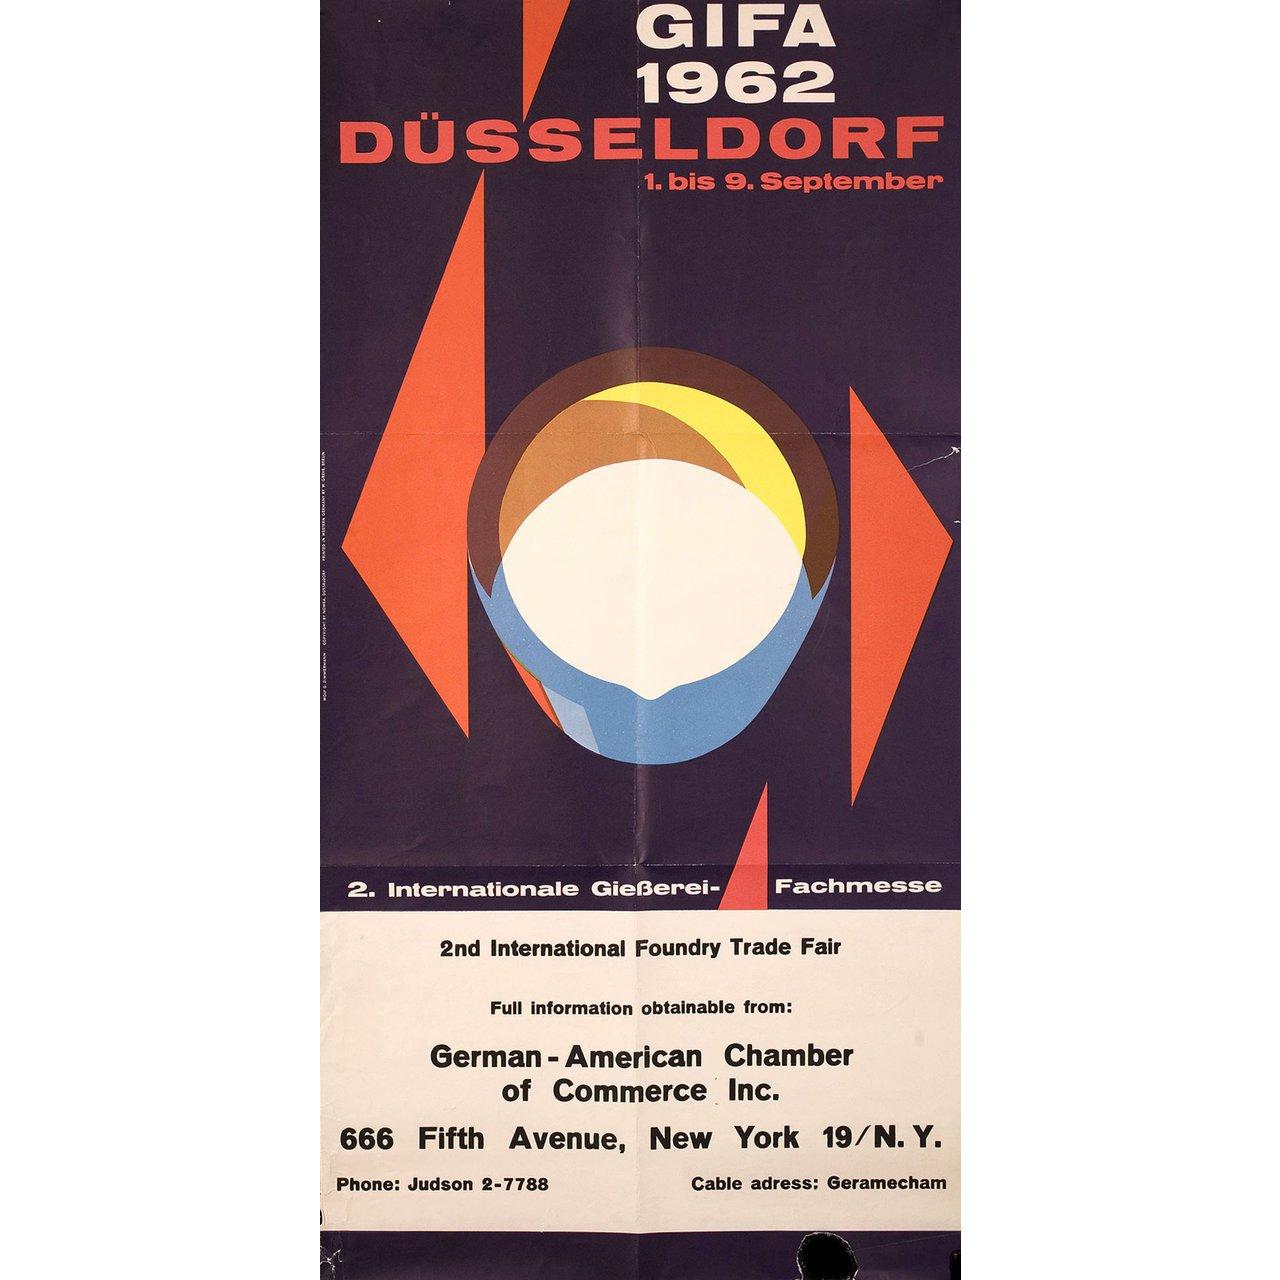 Originalplakat von Wolf Zimmerman aus dem Jahr 1962 für die GIFA Düsseldorf, (1962). Sehr guter Zustand, gefaltet. Viele Originalplakate wurden gefaltet herausgegeben oder nachträglich gefaltet. Bitte beachten Sie: Die Größe ist in Zoll angegeben